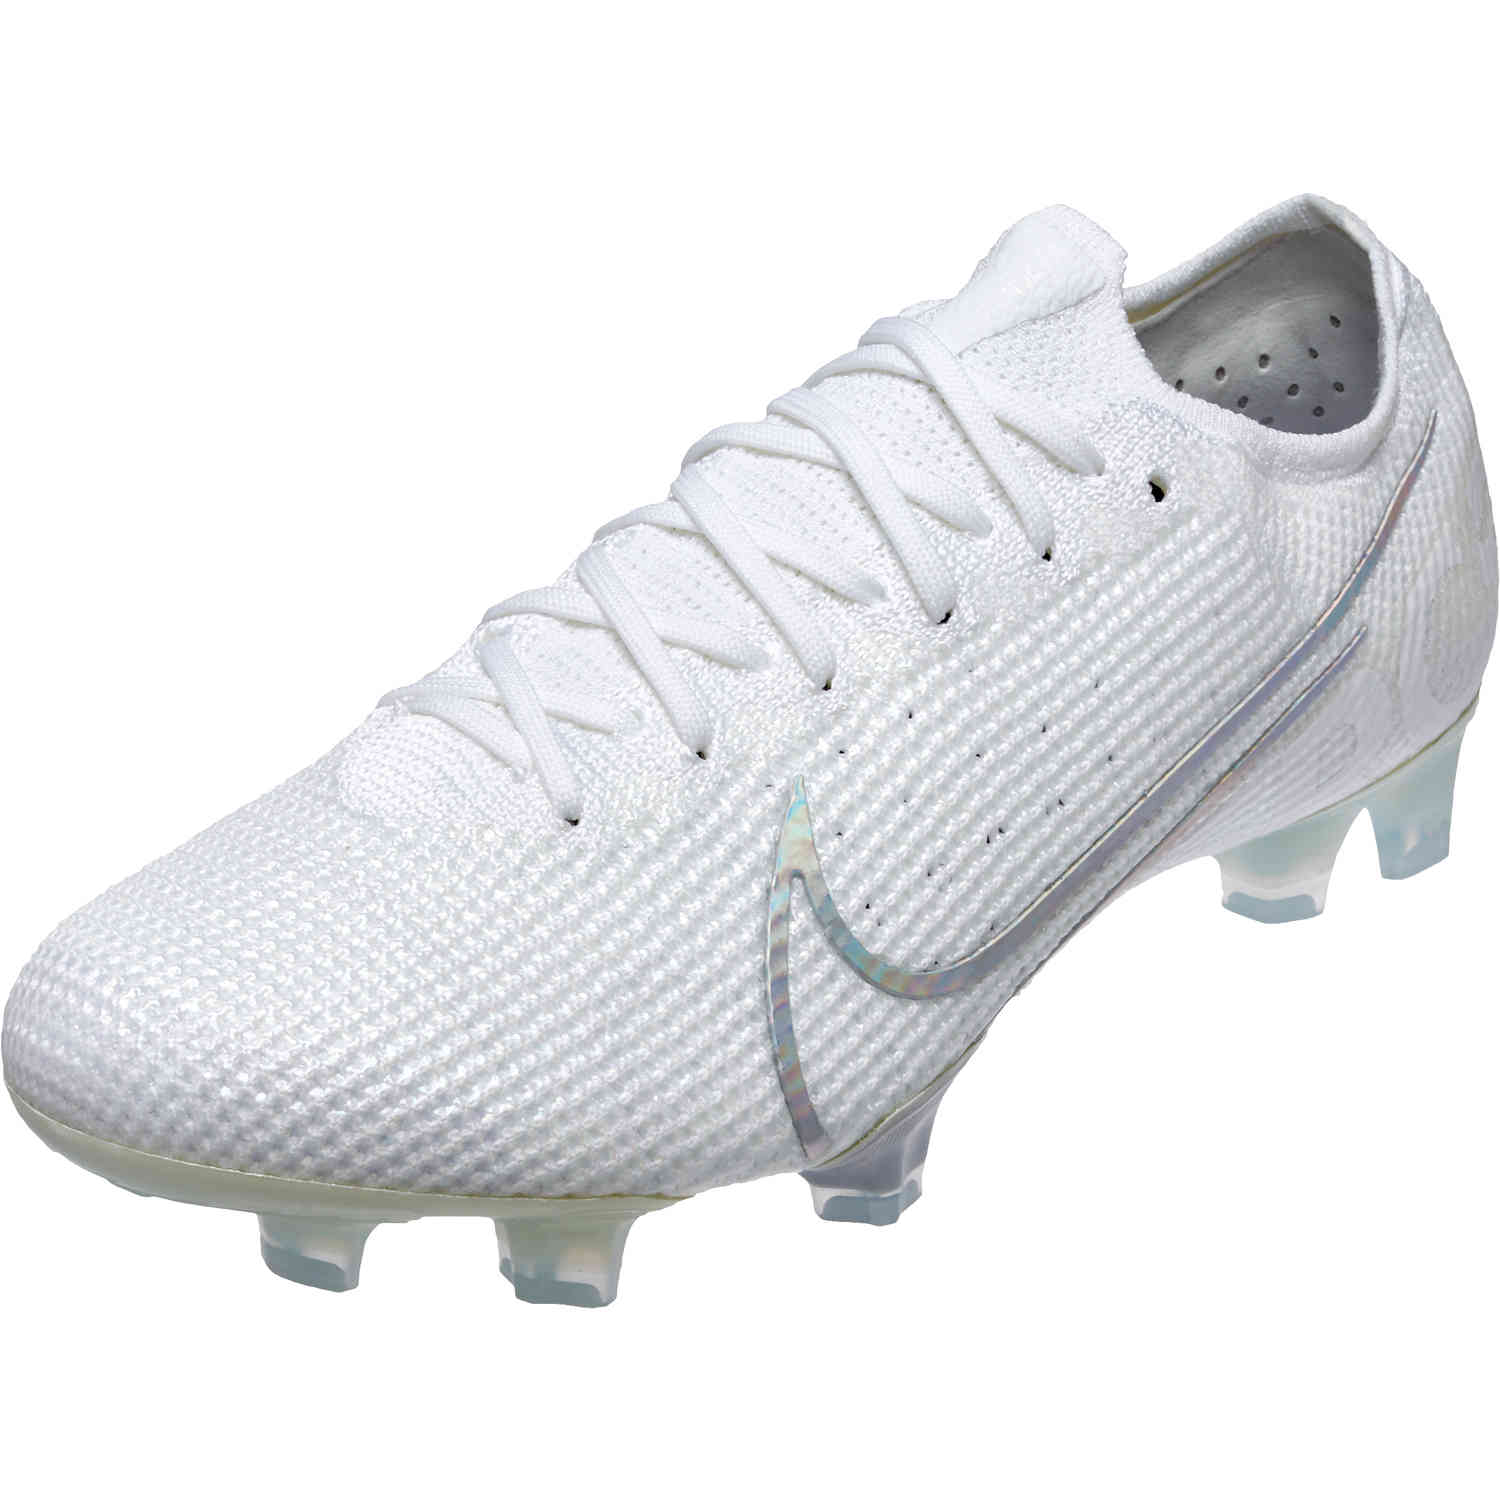 Men's Mercurial Football Boots. Nike.com ID